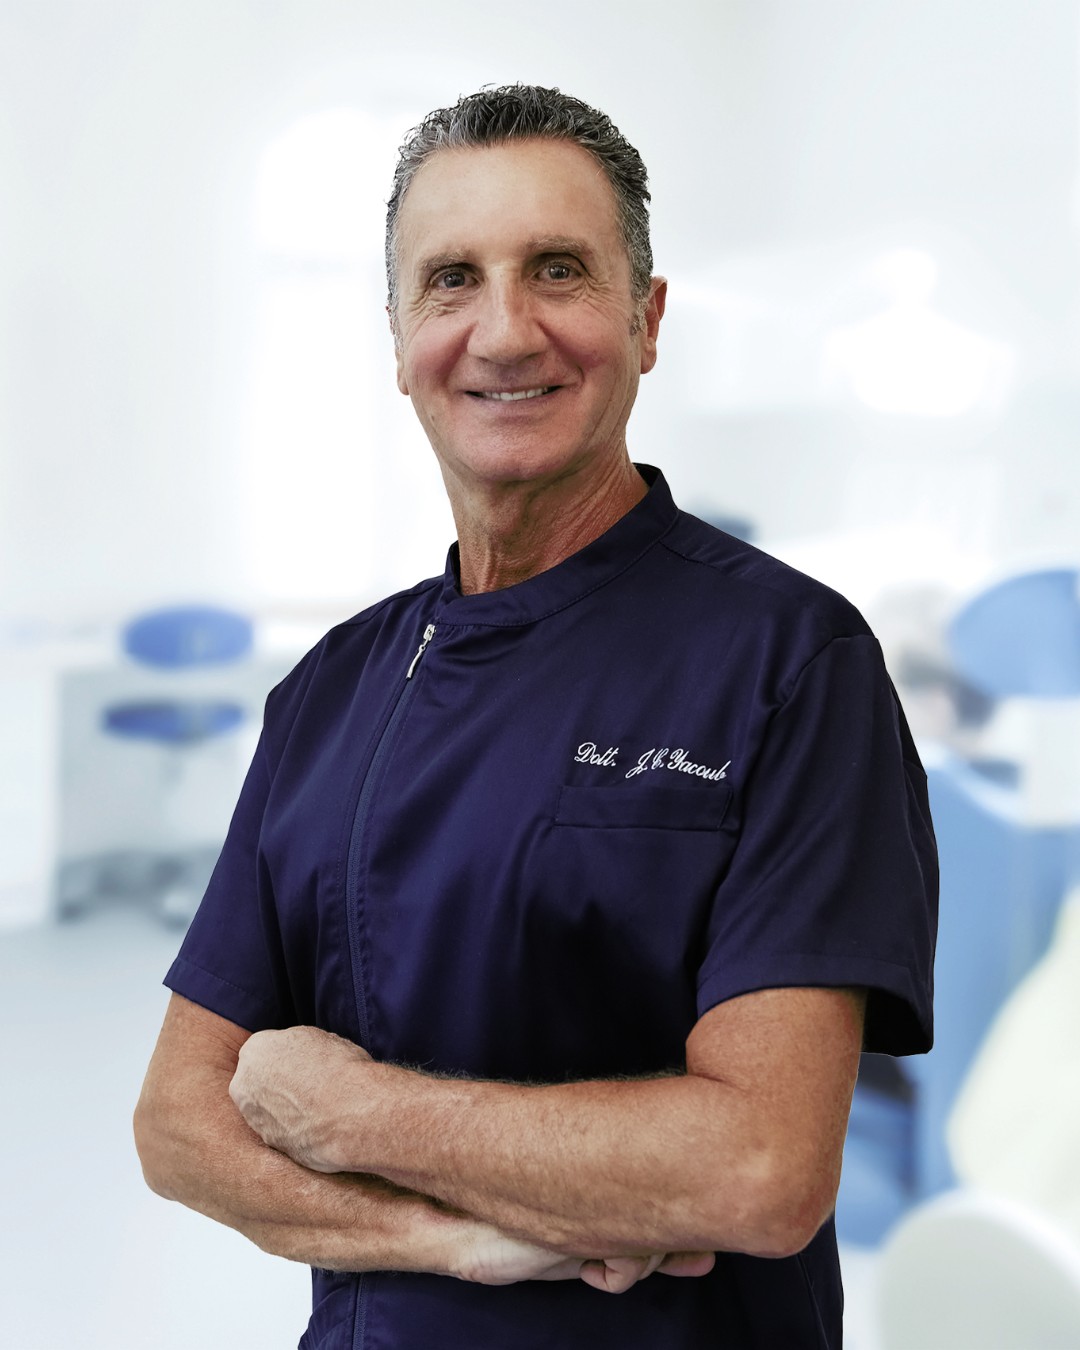 dottor Jean Claude yacoub studio dentistico balduina e Amelia roma terni implantologia e impianti dentali